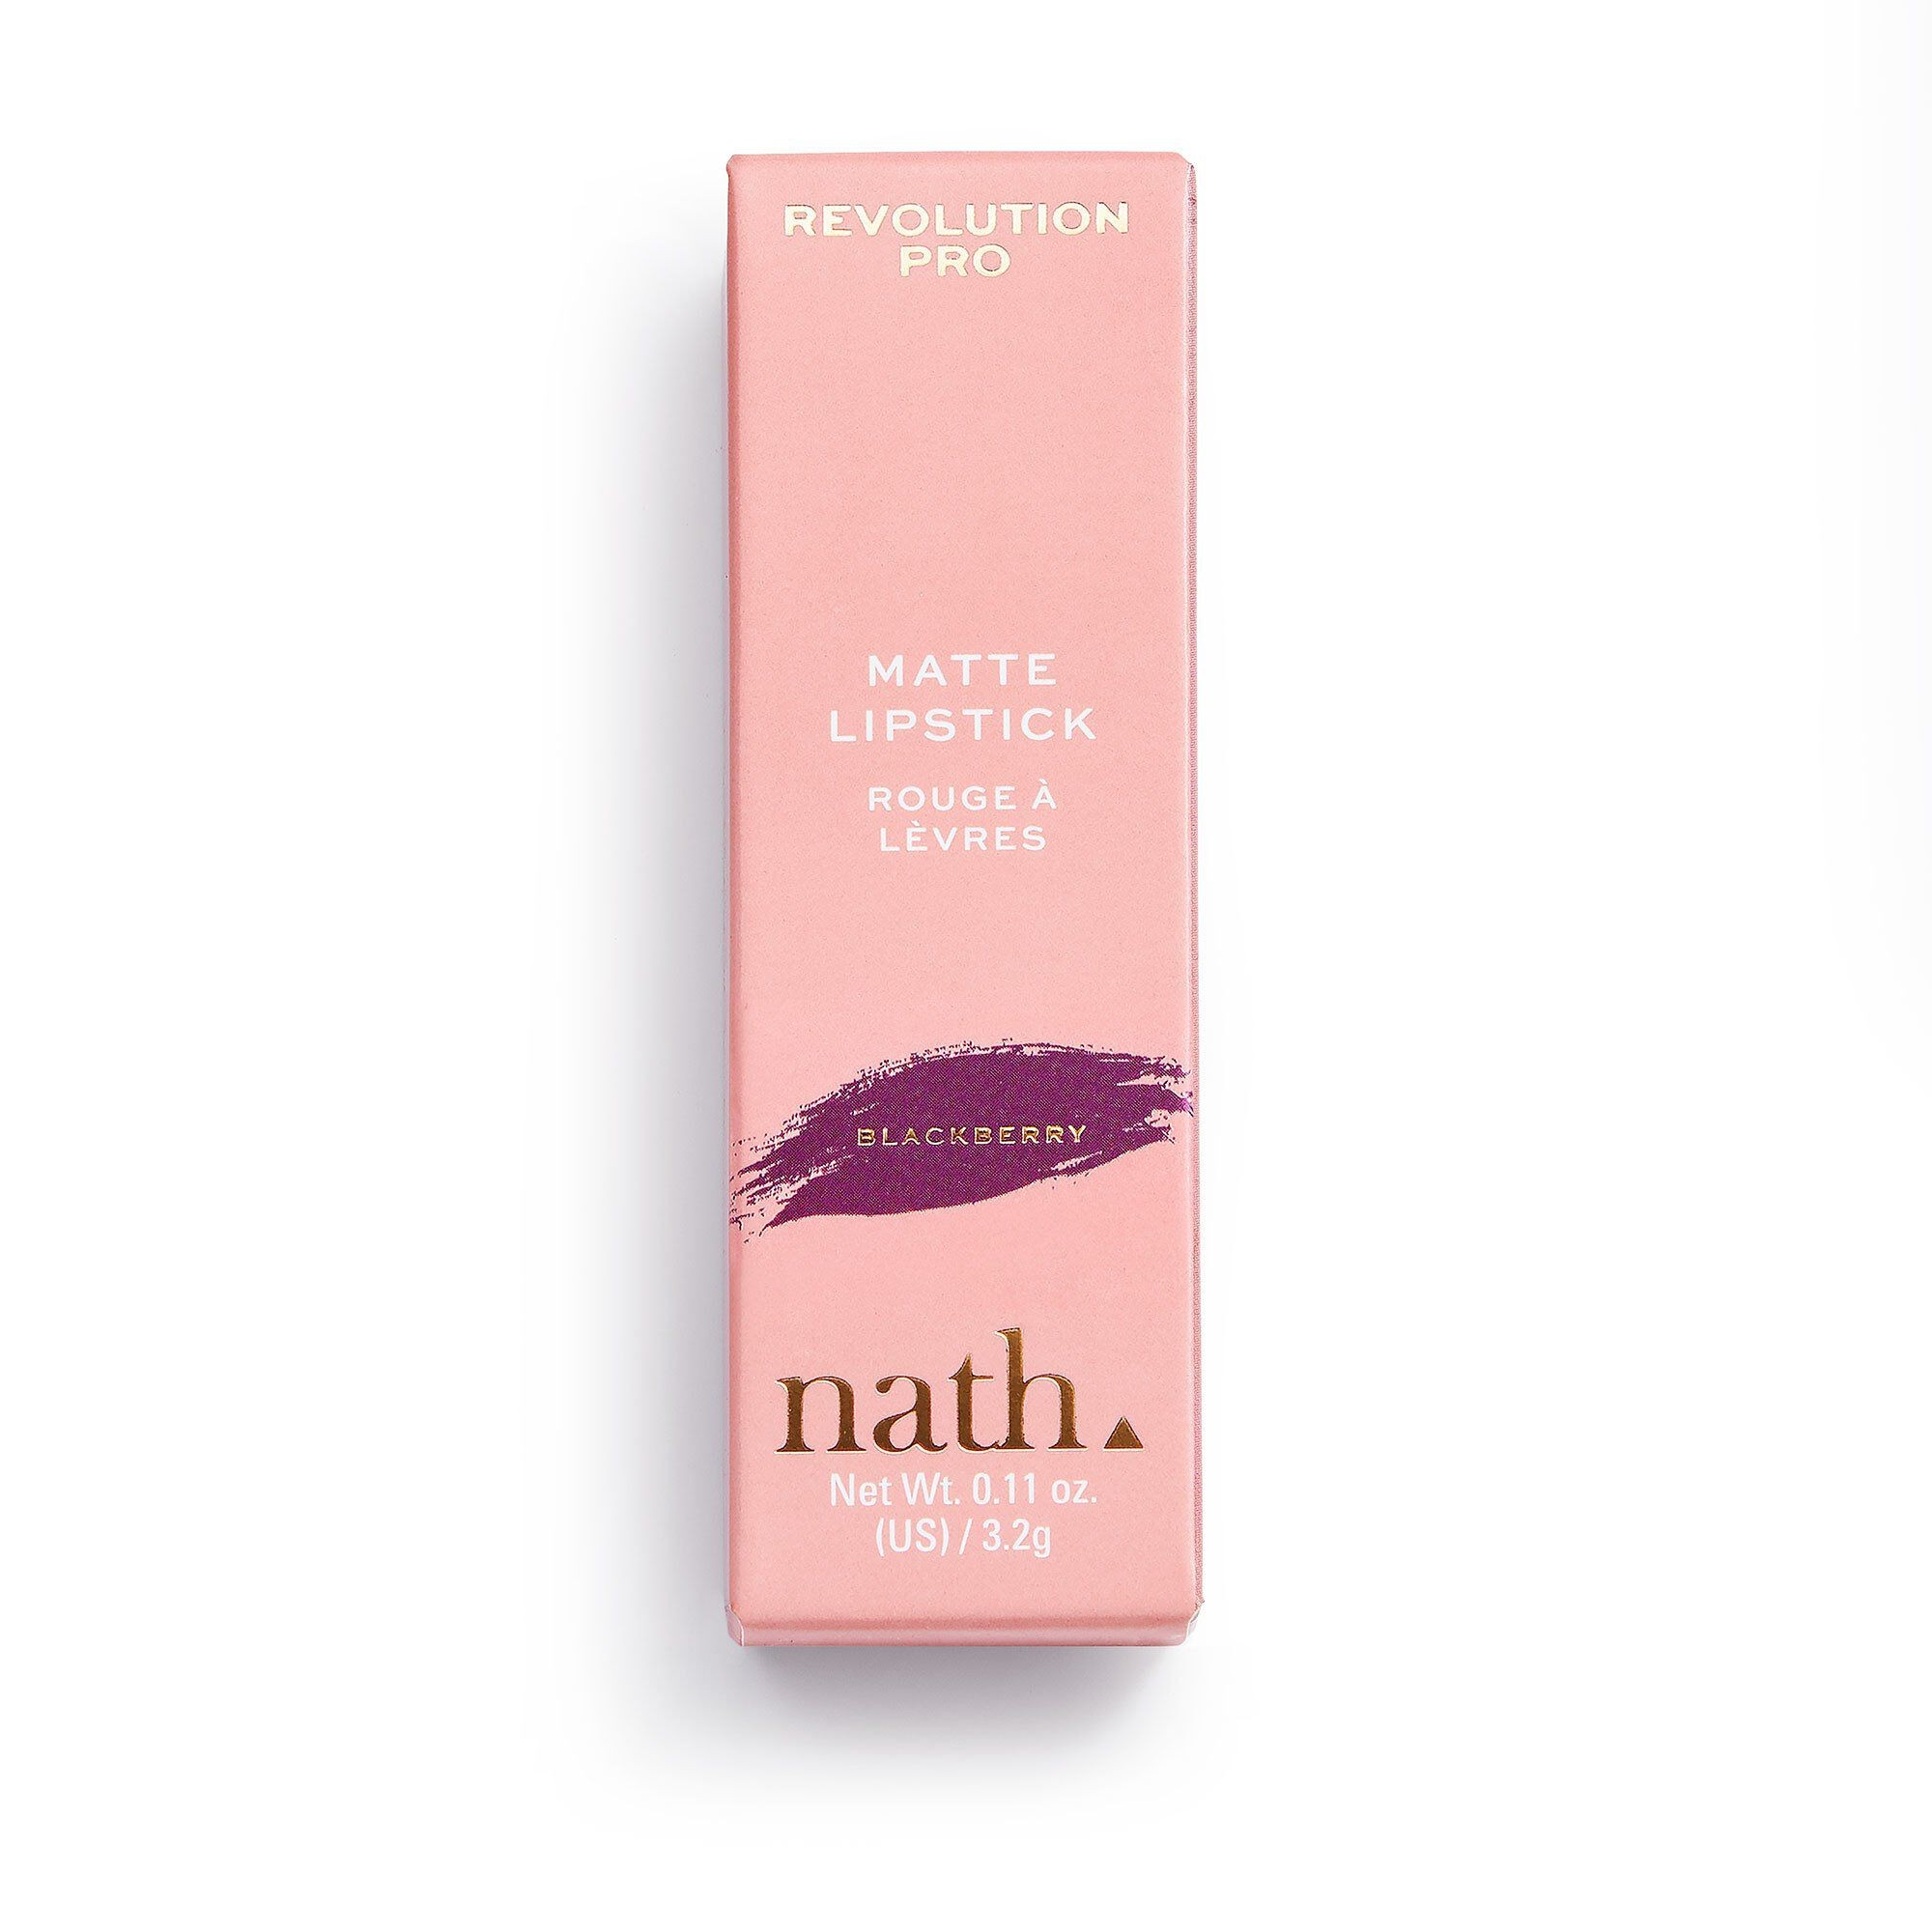 Revolution Pro X Nath Lipstick 